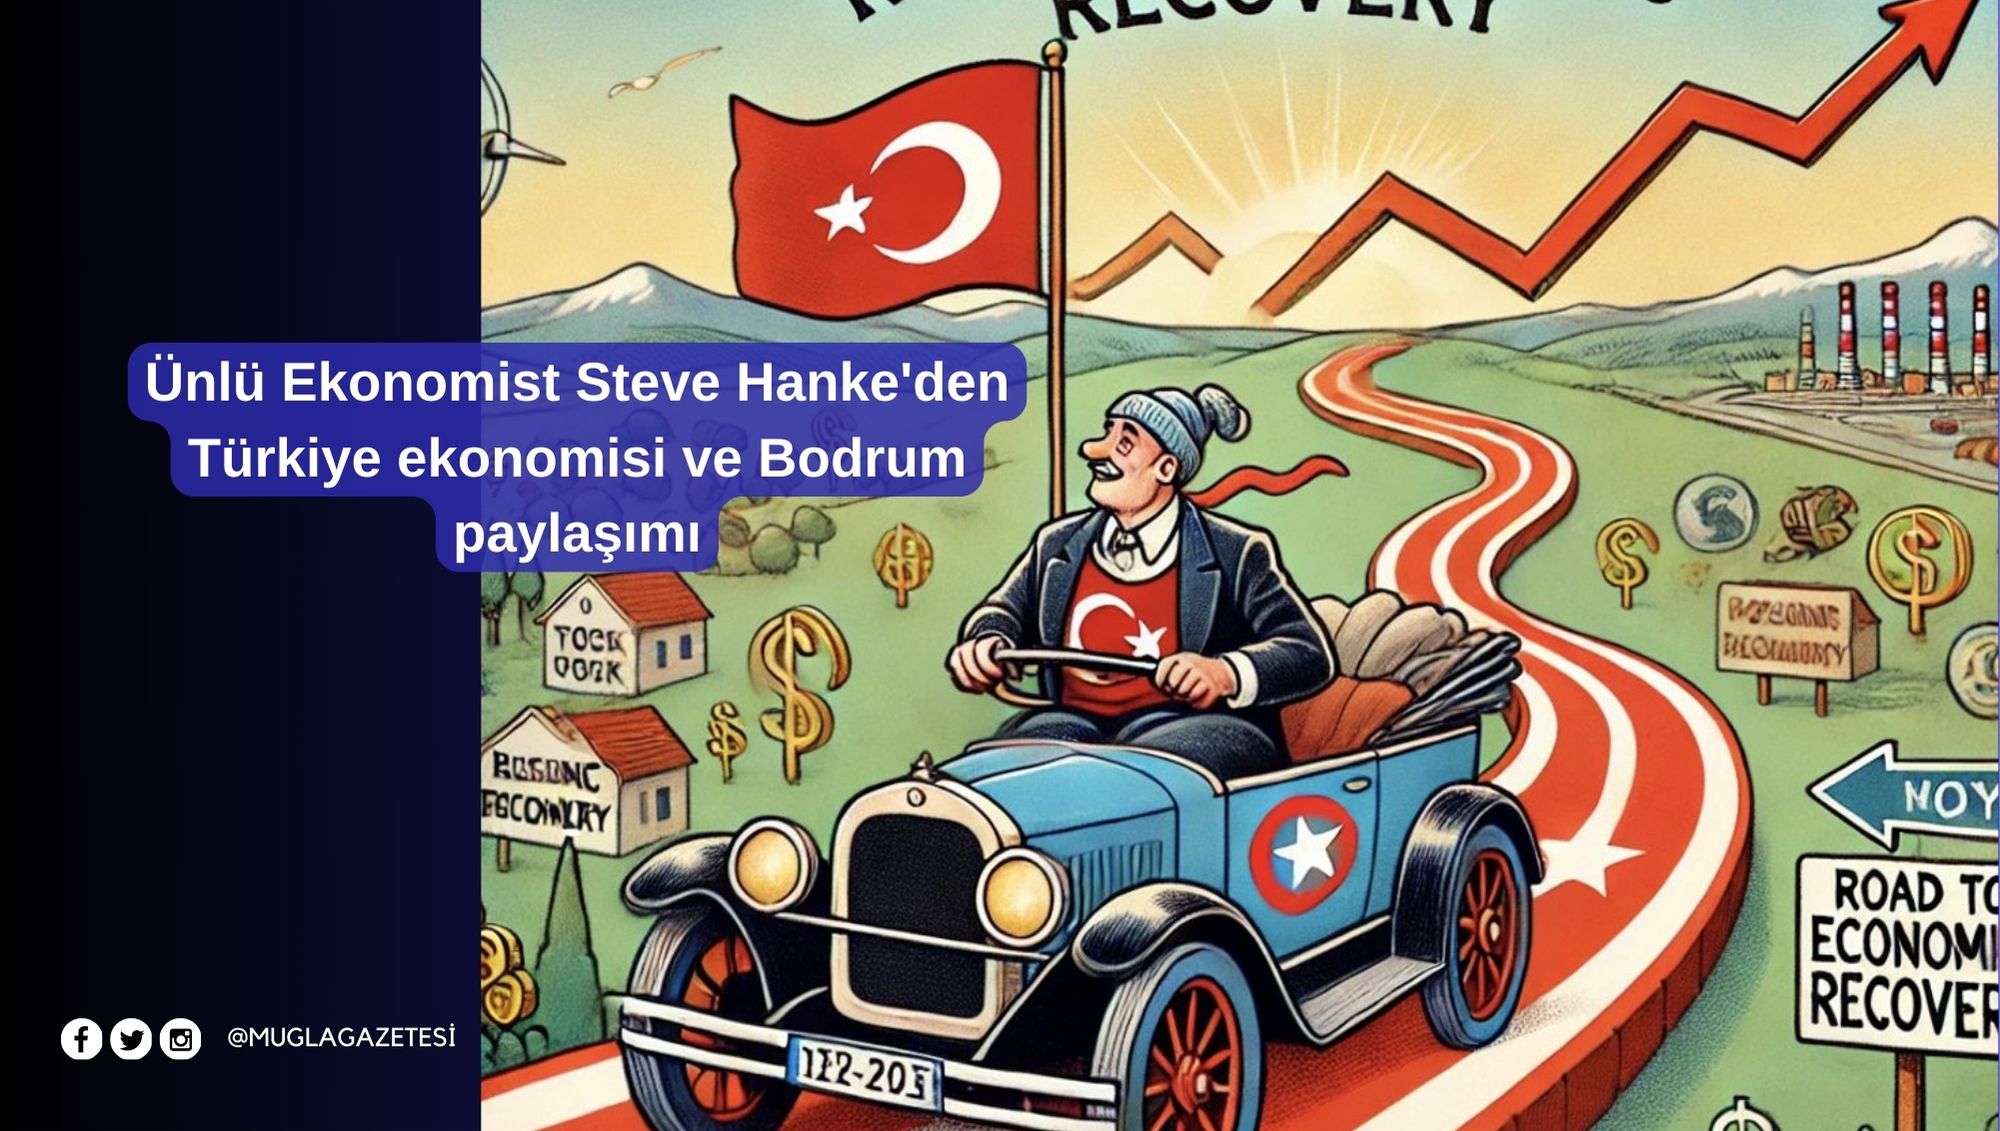 Ünlü Ekonomist Steve Hanke'den Türkiye ekonomisi ve Bodrum paylaşımı